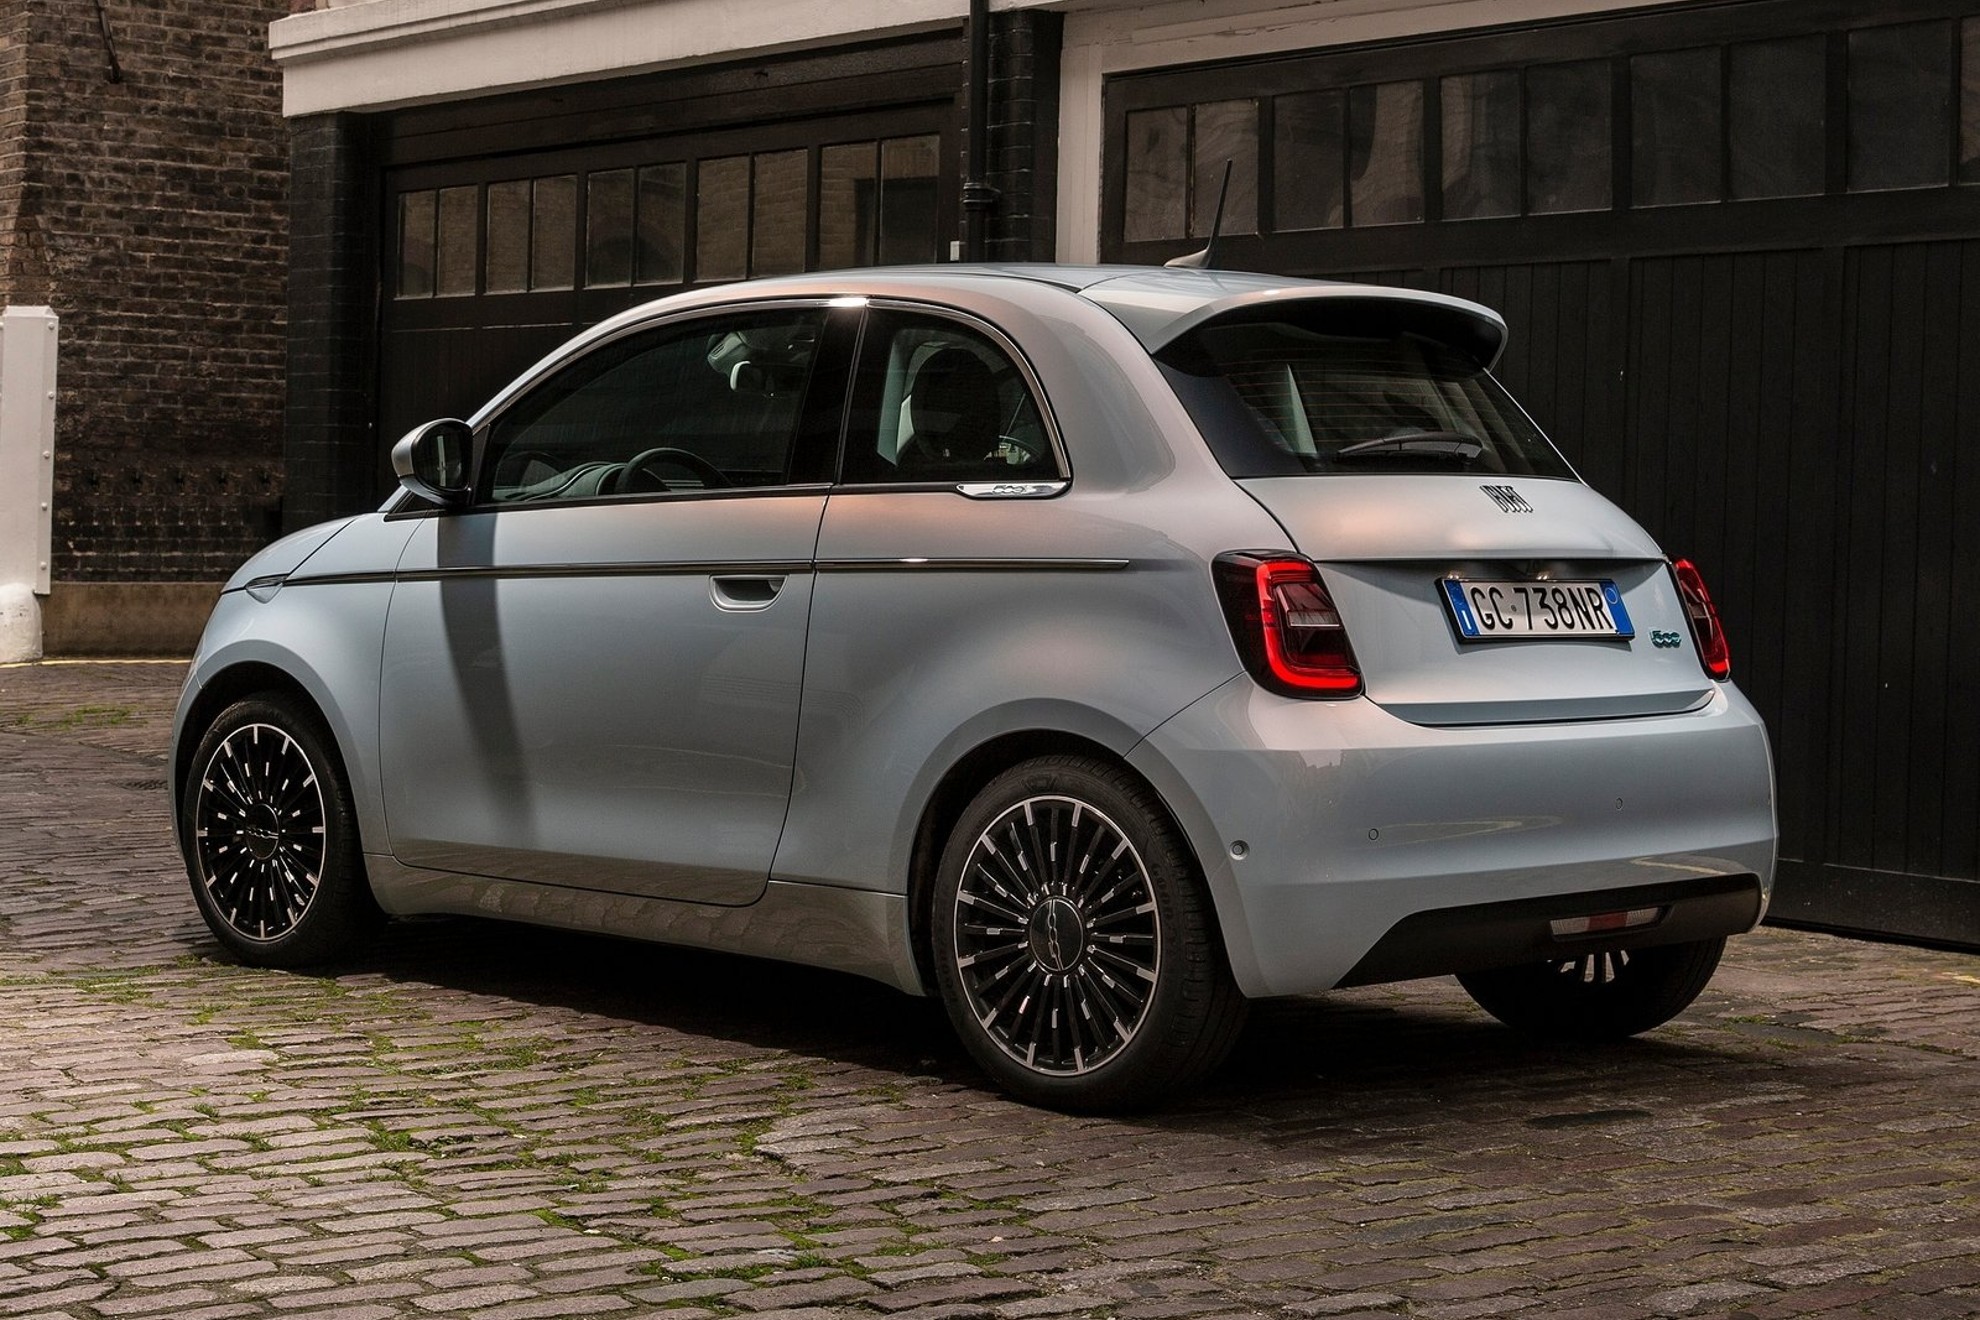 El Fiat 500, adems de ser el ms vendido en noviembre, es lder en el segmento B.